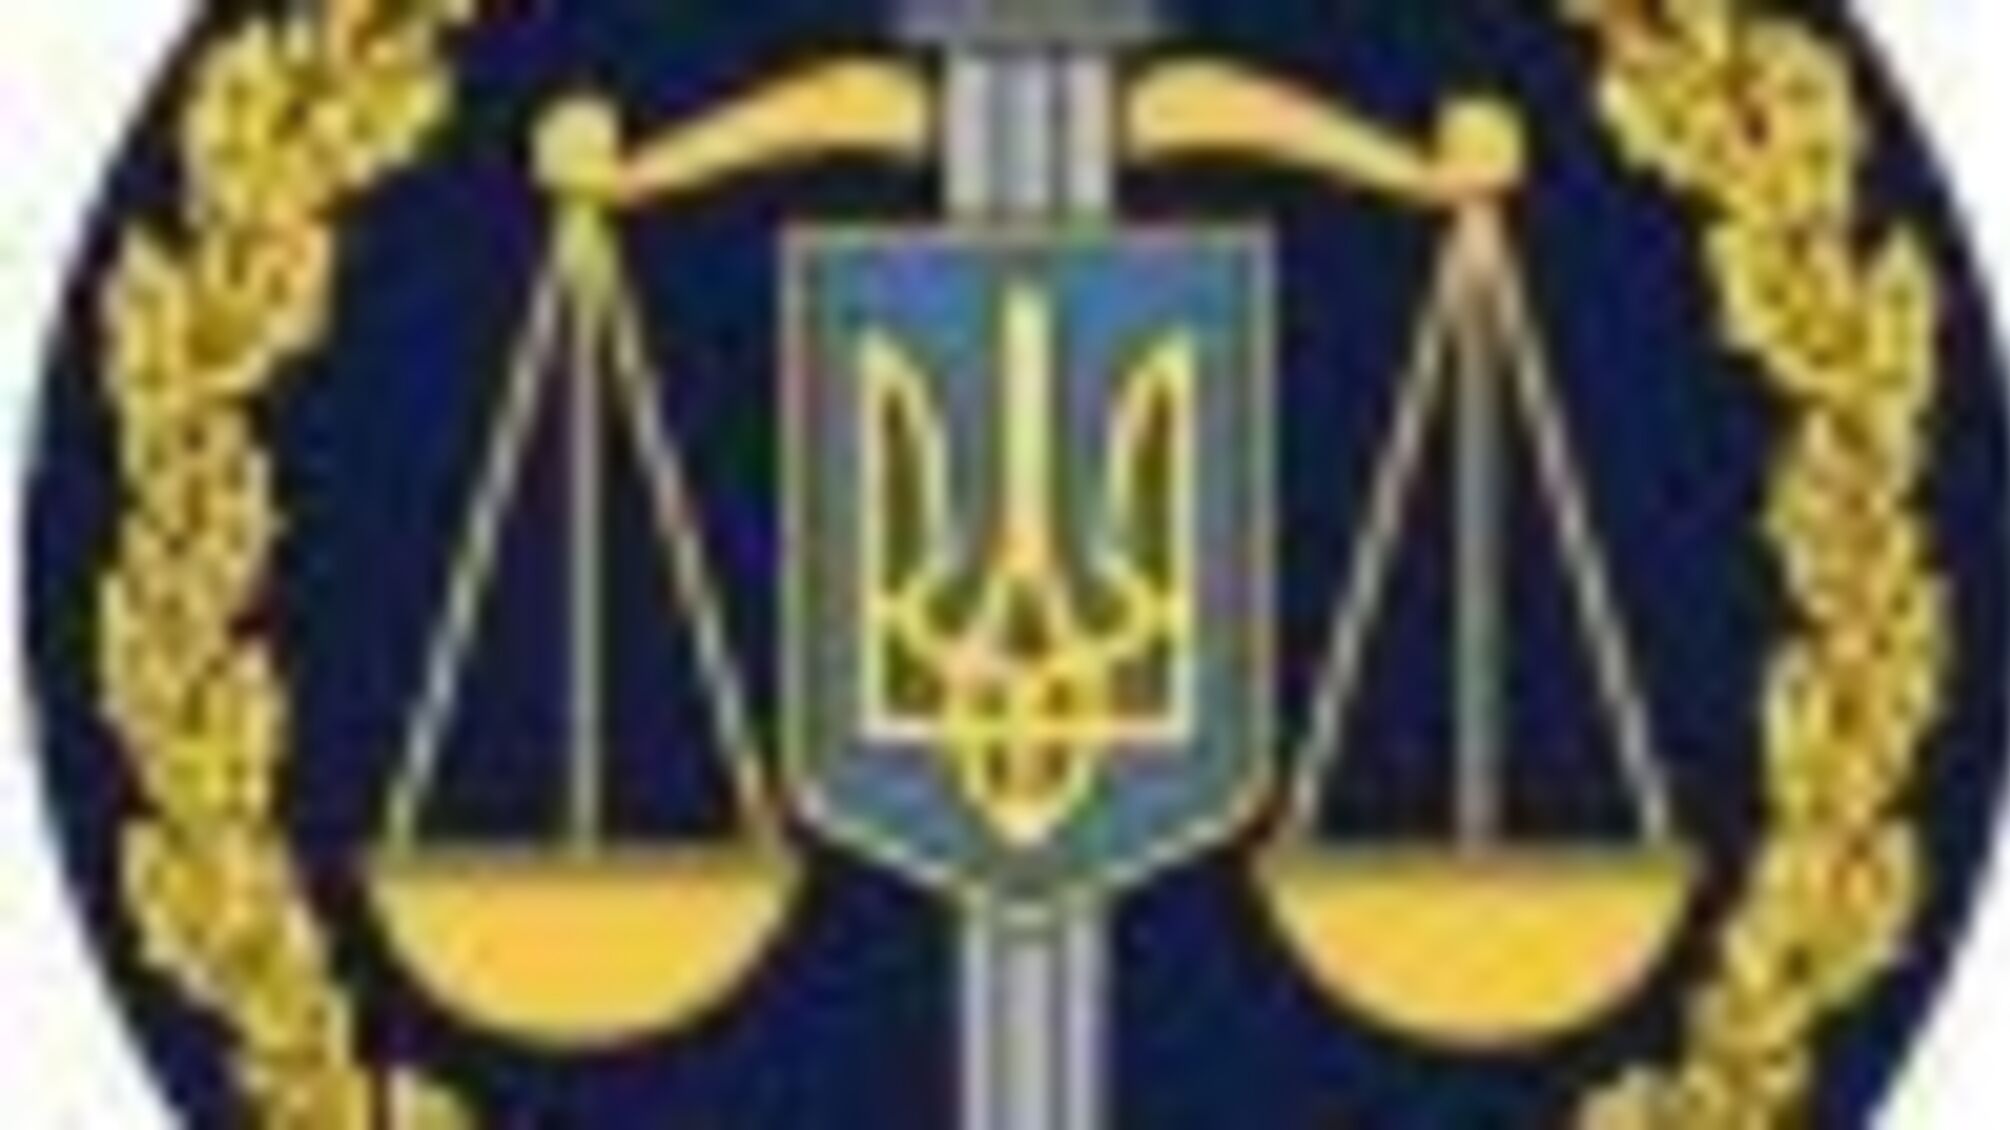 Зґвалтування на Харківщині – судитимуть двох чоловіків (ФОТО)